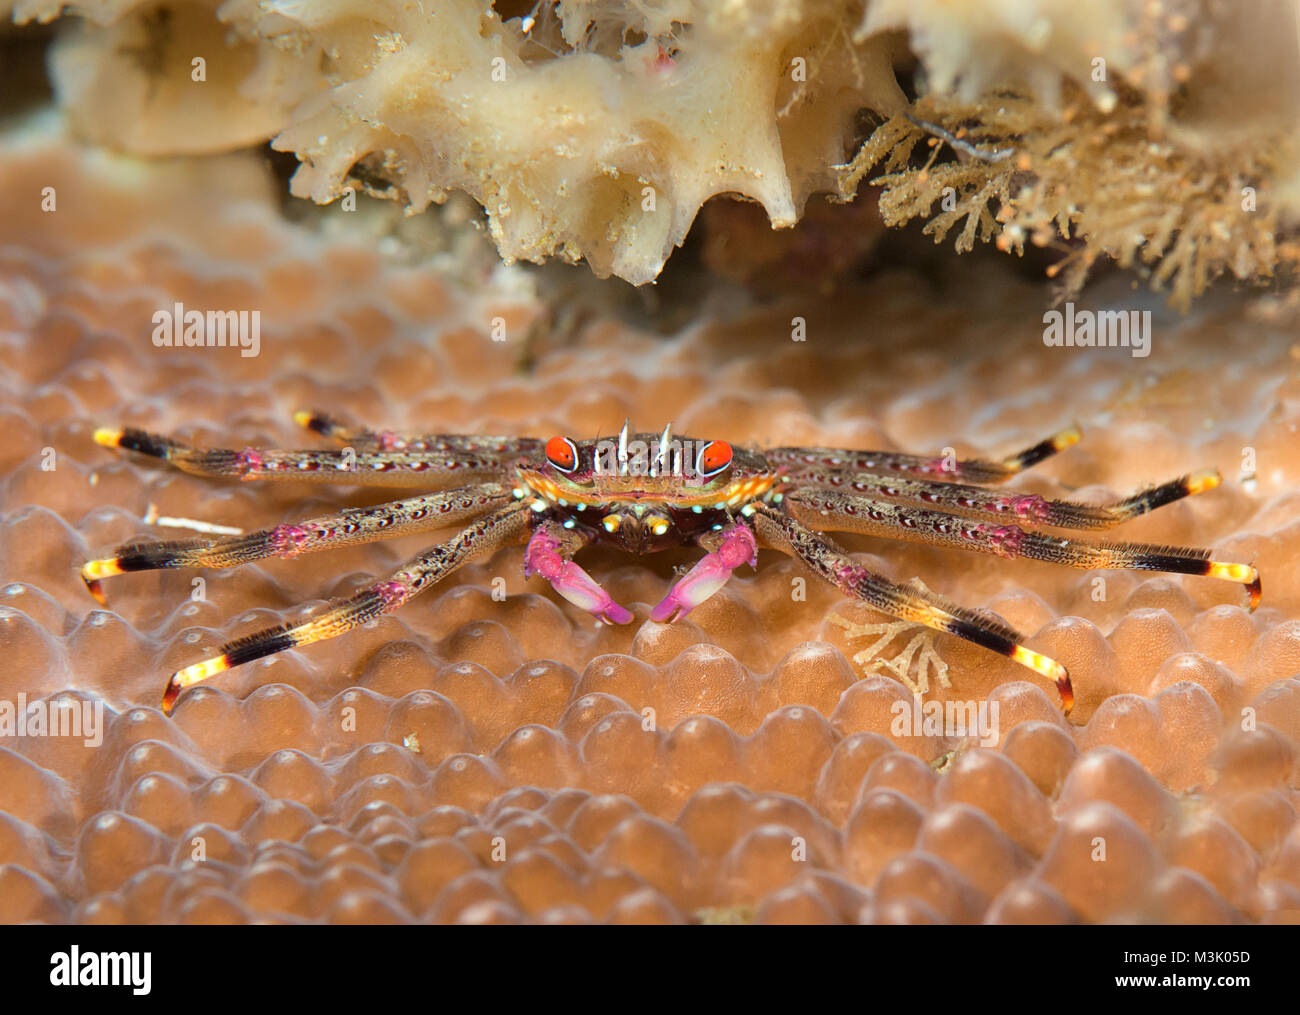 Télévision le crabe commun ( planissimum Percnon ) reposant sur les récifs coralliens de Bali, Indonésie Banque D'Images